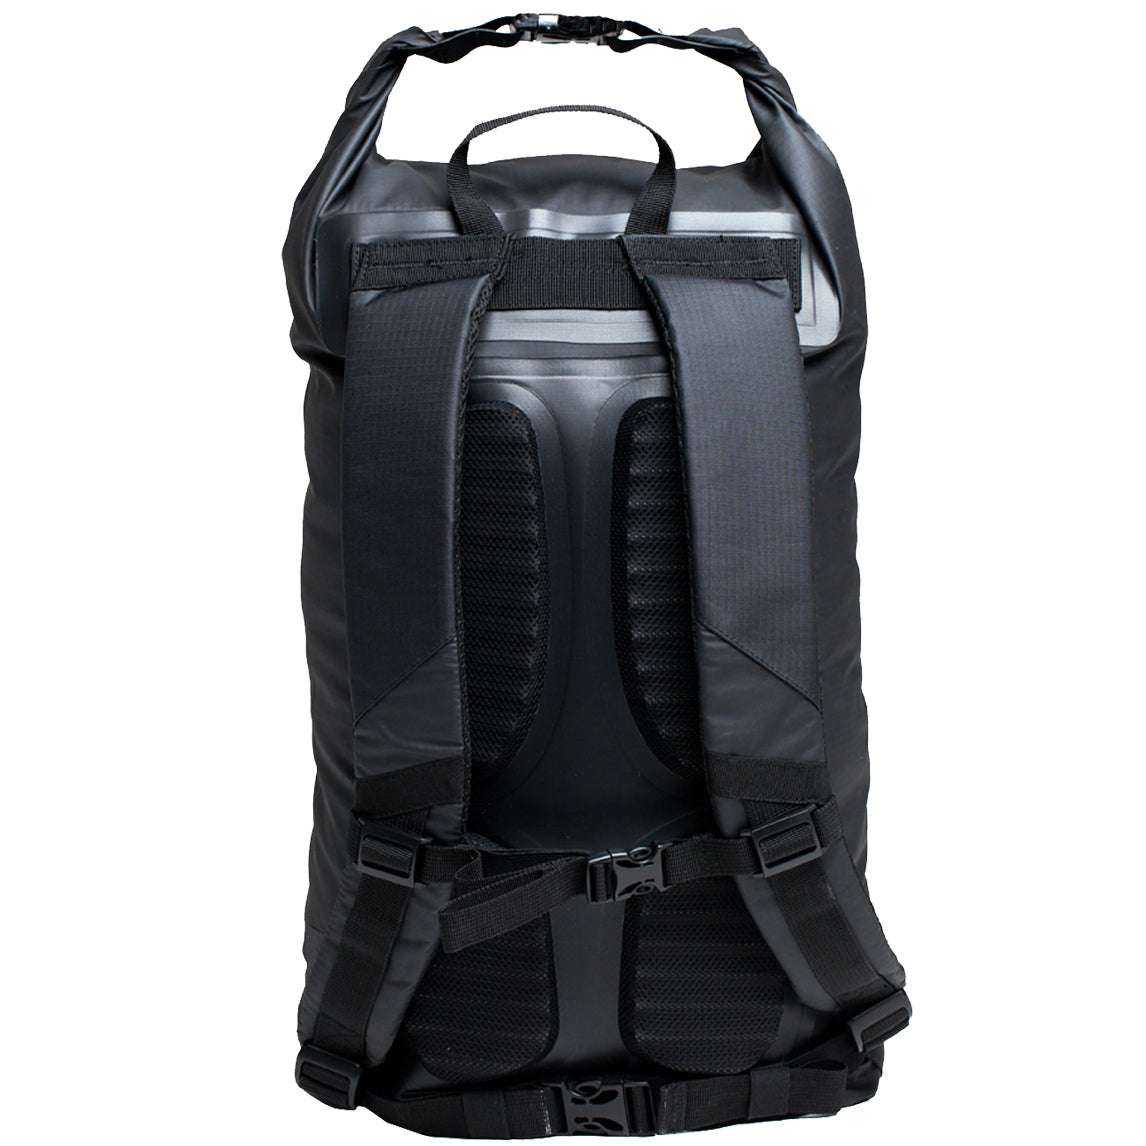 C-Skins Session 22L Dry Bag Backpack | Padded Shoulder Straps